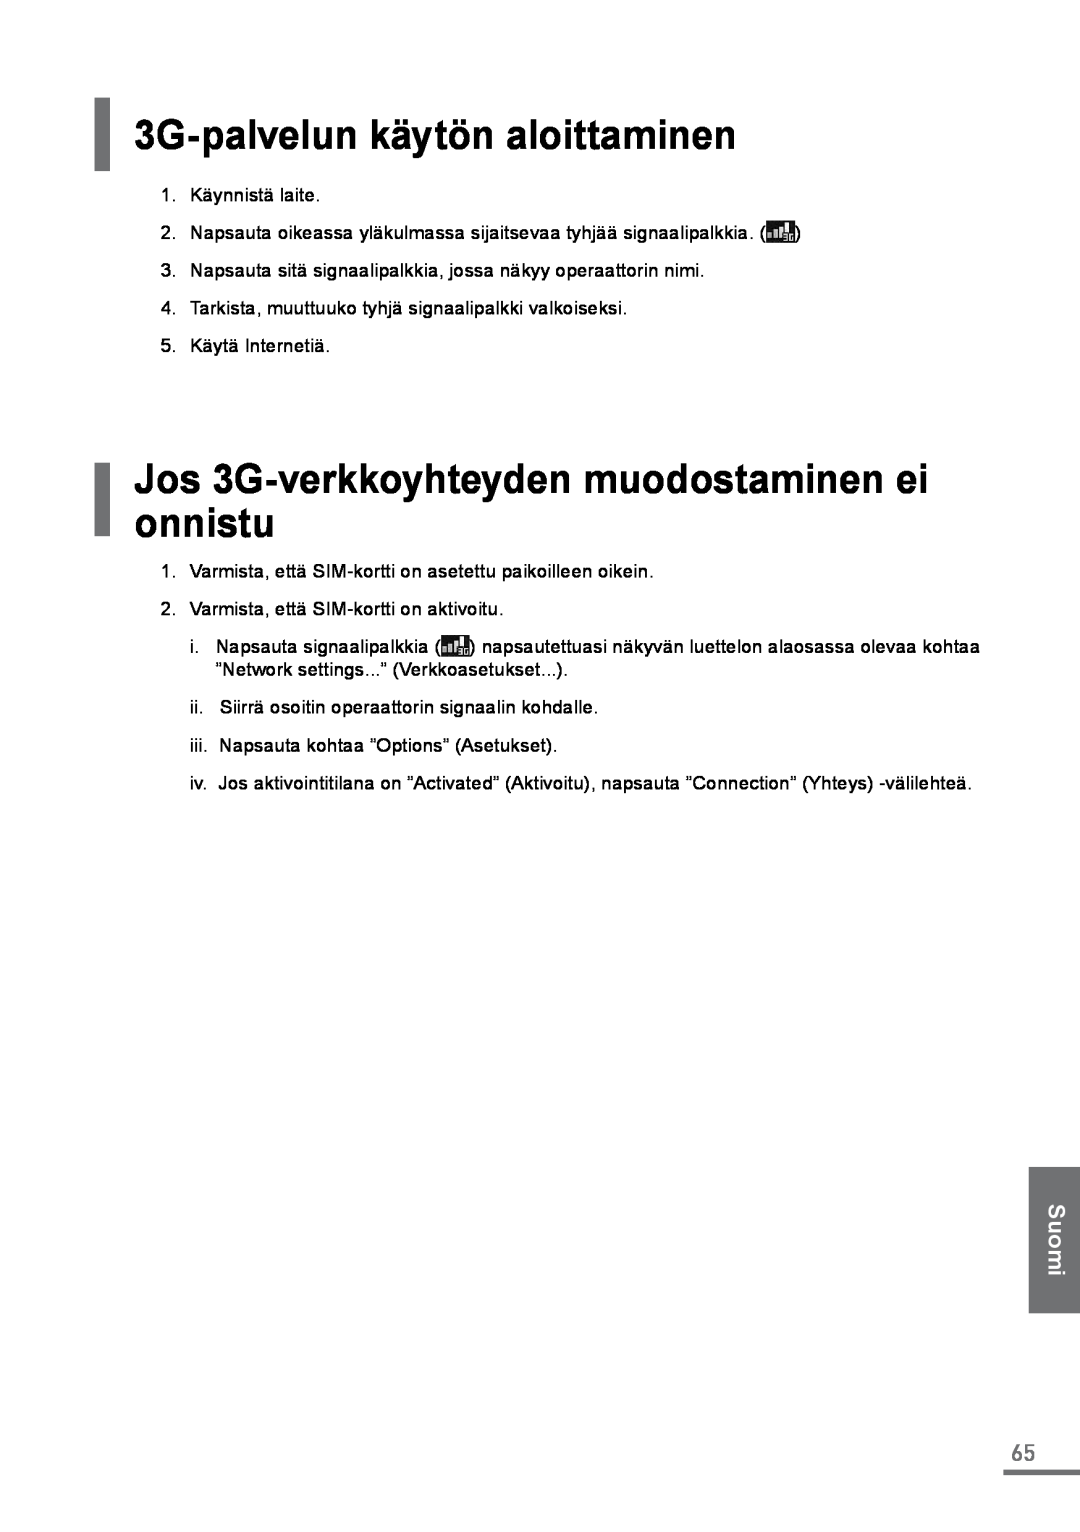 Samsung XE500C21-A01FR manual 3G-palvelun käytön aloittaminen, Jos 3G-verkkoyhteyden muodostaminen ei onnistu, Suomi 